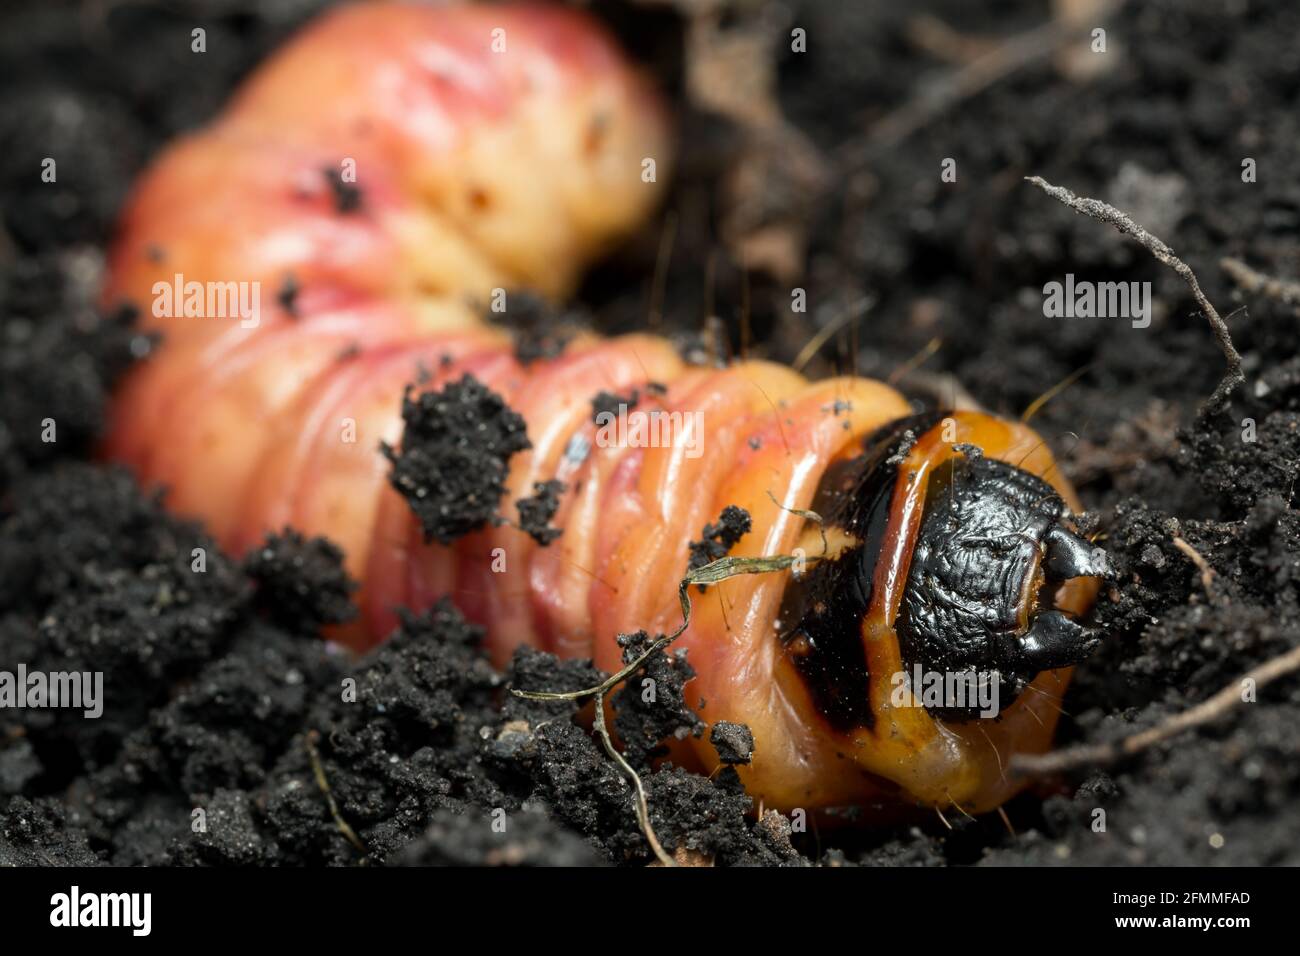 Goat moth, Cossus cossus larva, macro photo Stock Photo